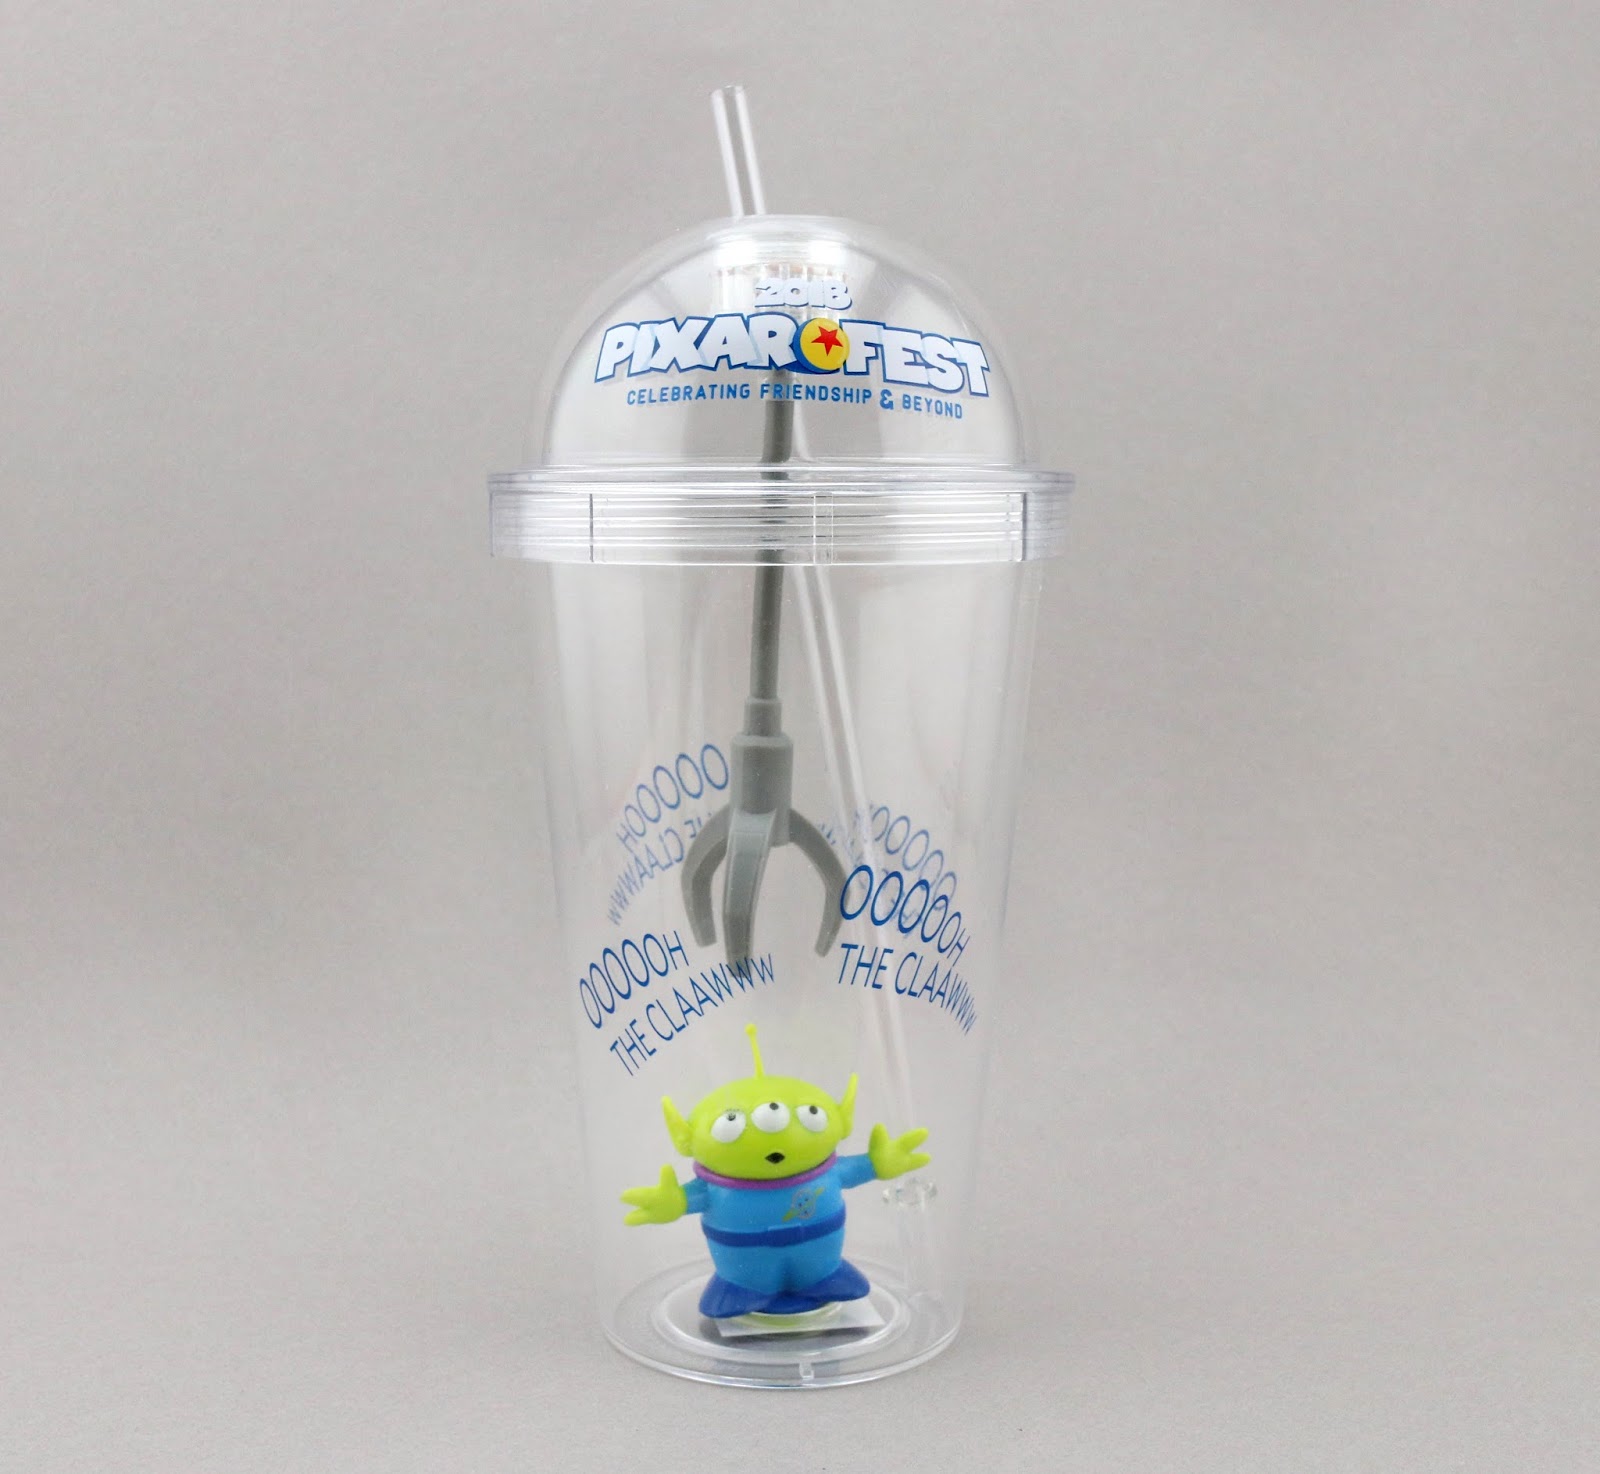 pixar fest toy story alien light-up tumbler 